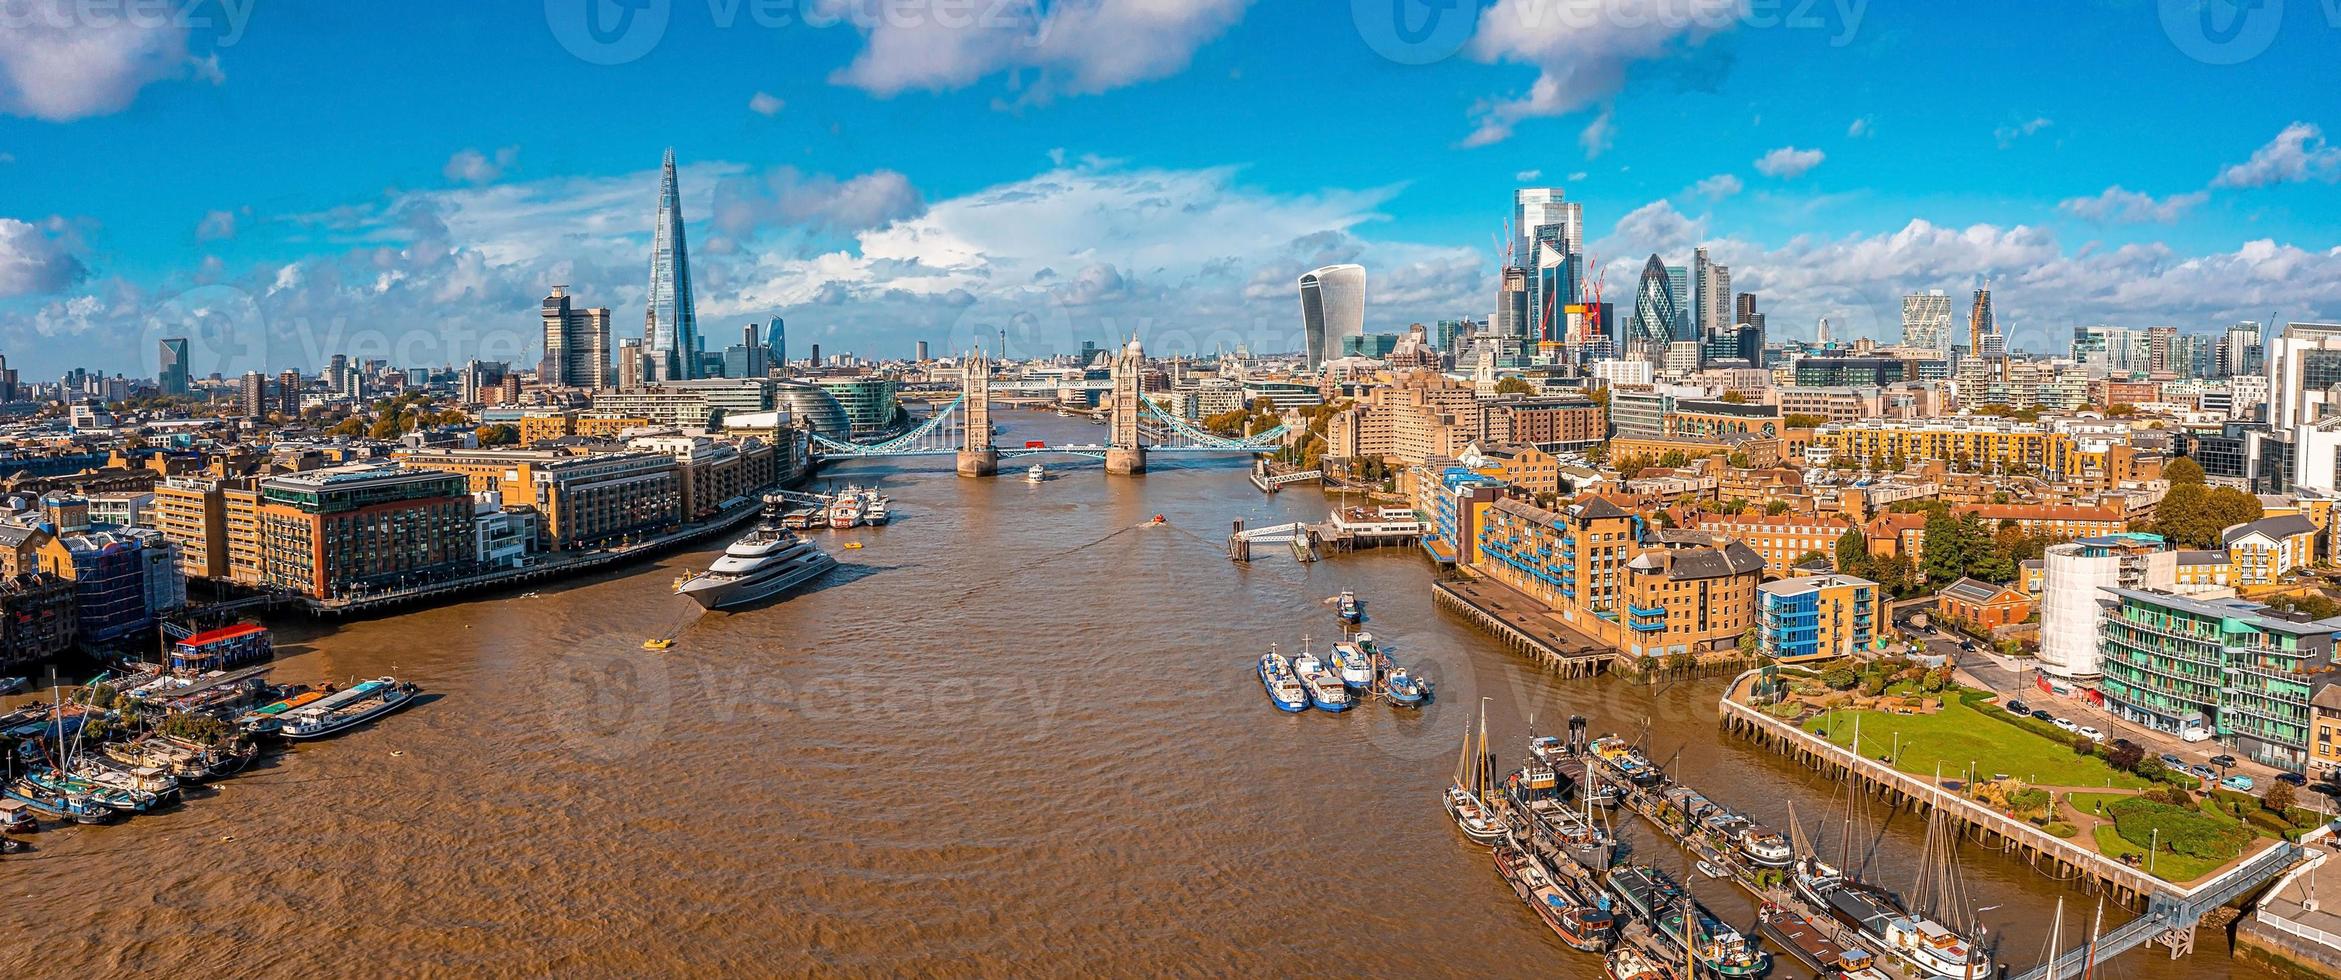 Vue panoramique aérienne de la ville sur le London Tower Bridge photo